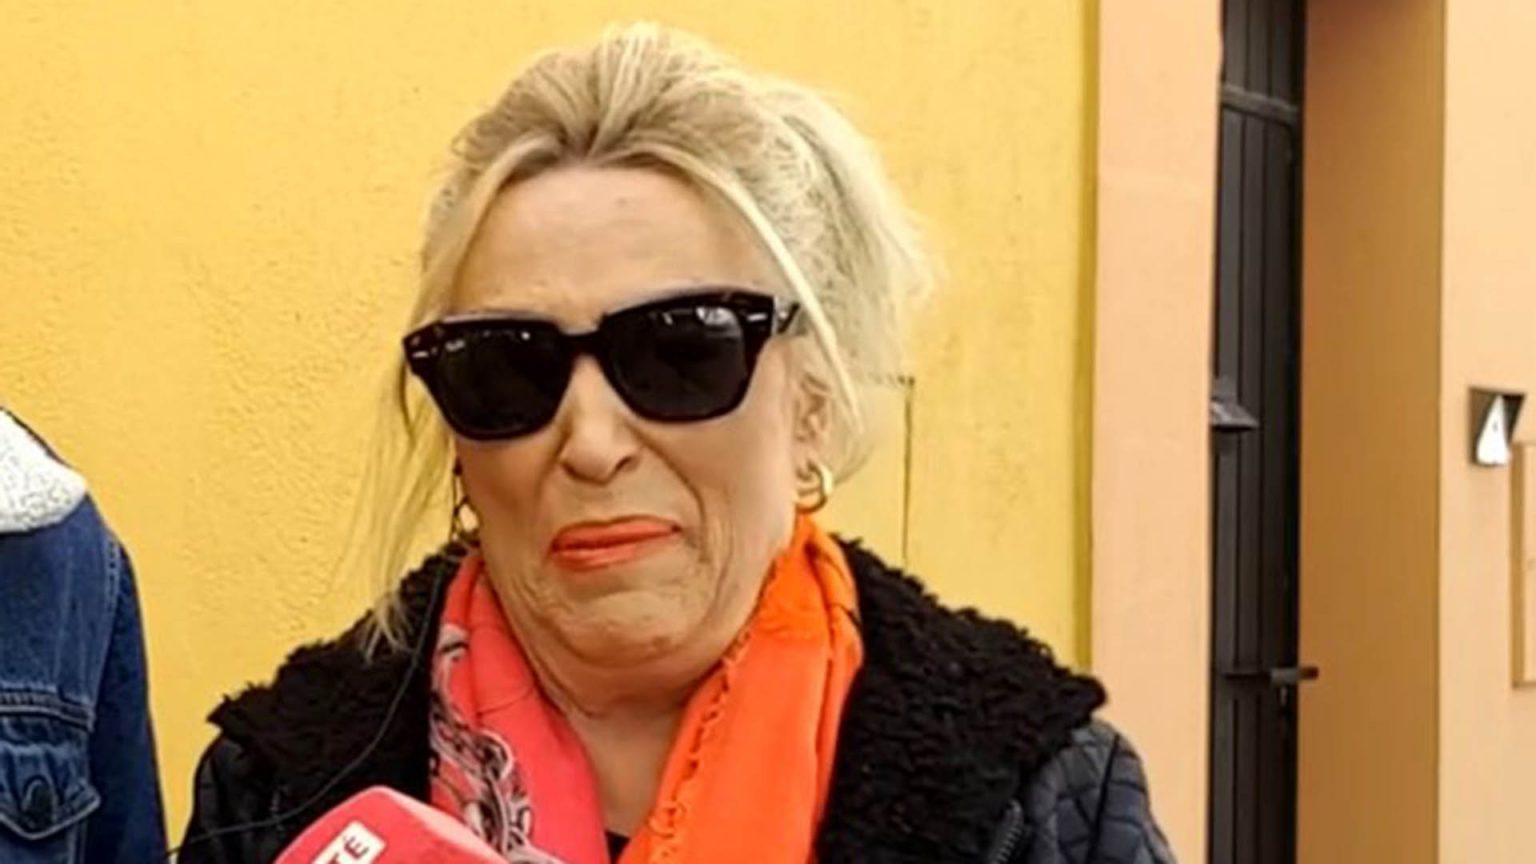 Lydia Lozano reaparece entre lágrimas tras la entrevista de Al Bano: “A mi madre le dio un parraque”